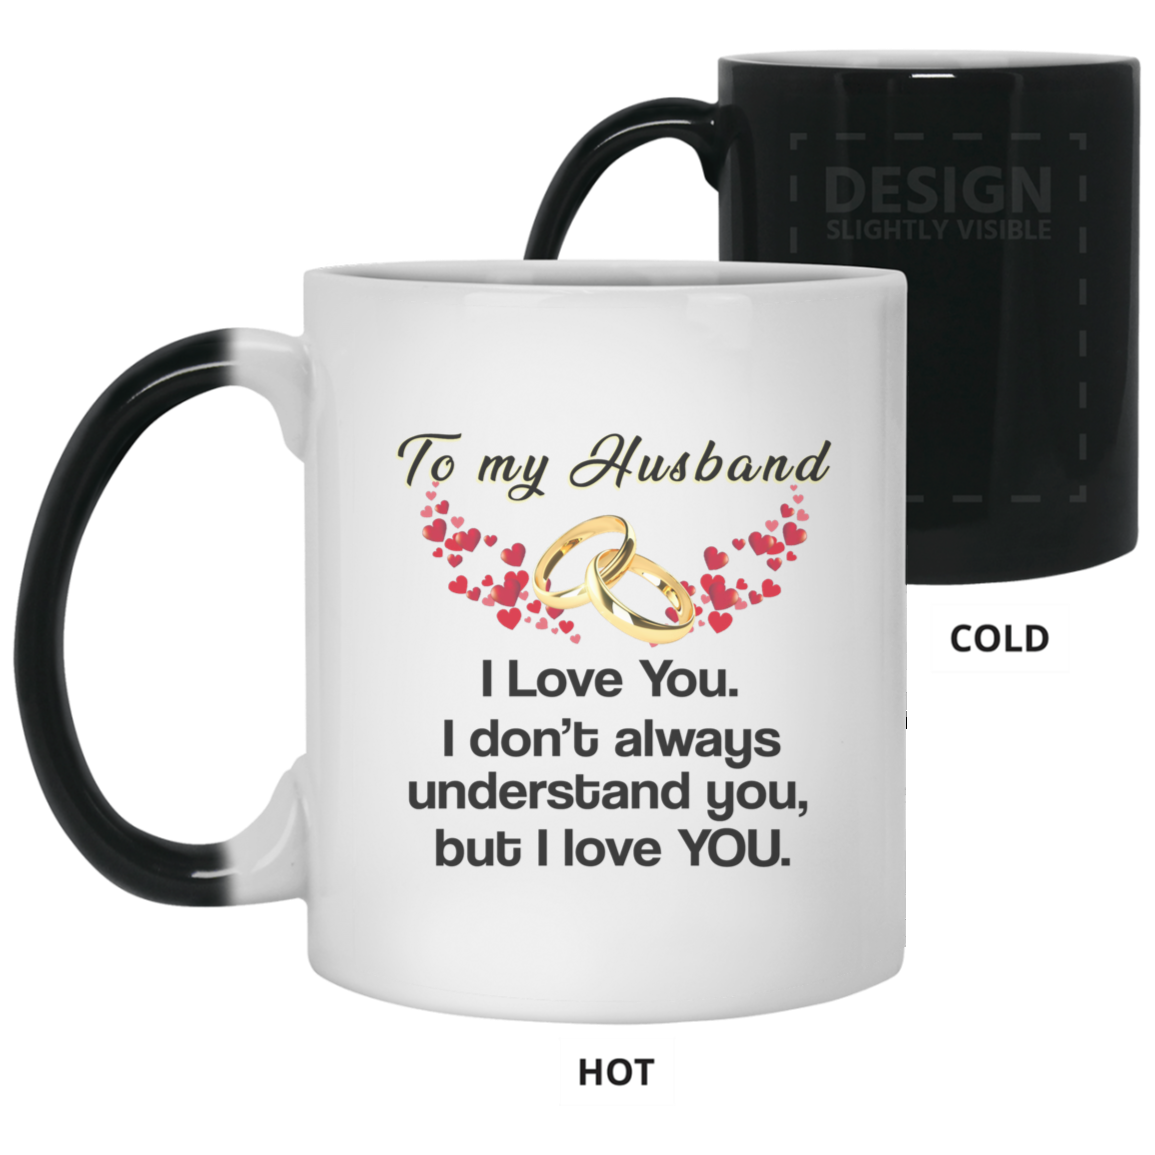 Husband, I Love You 11 oz. Color Changing Mug